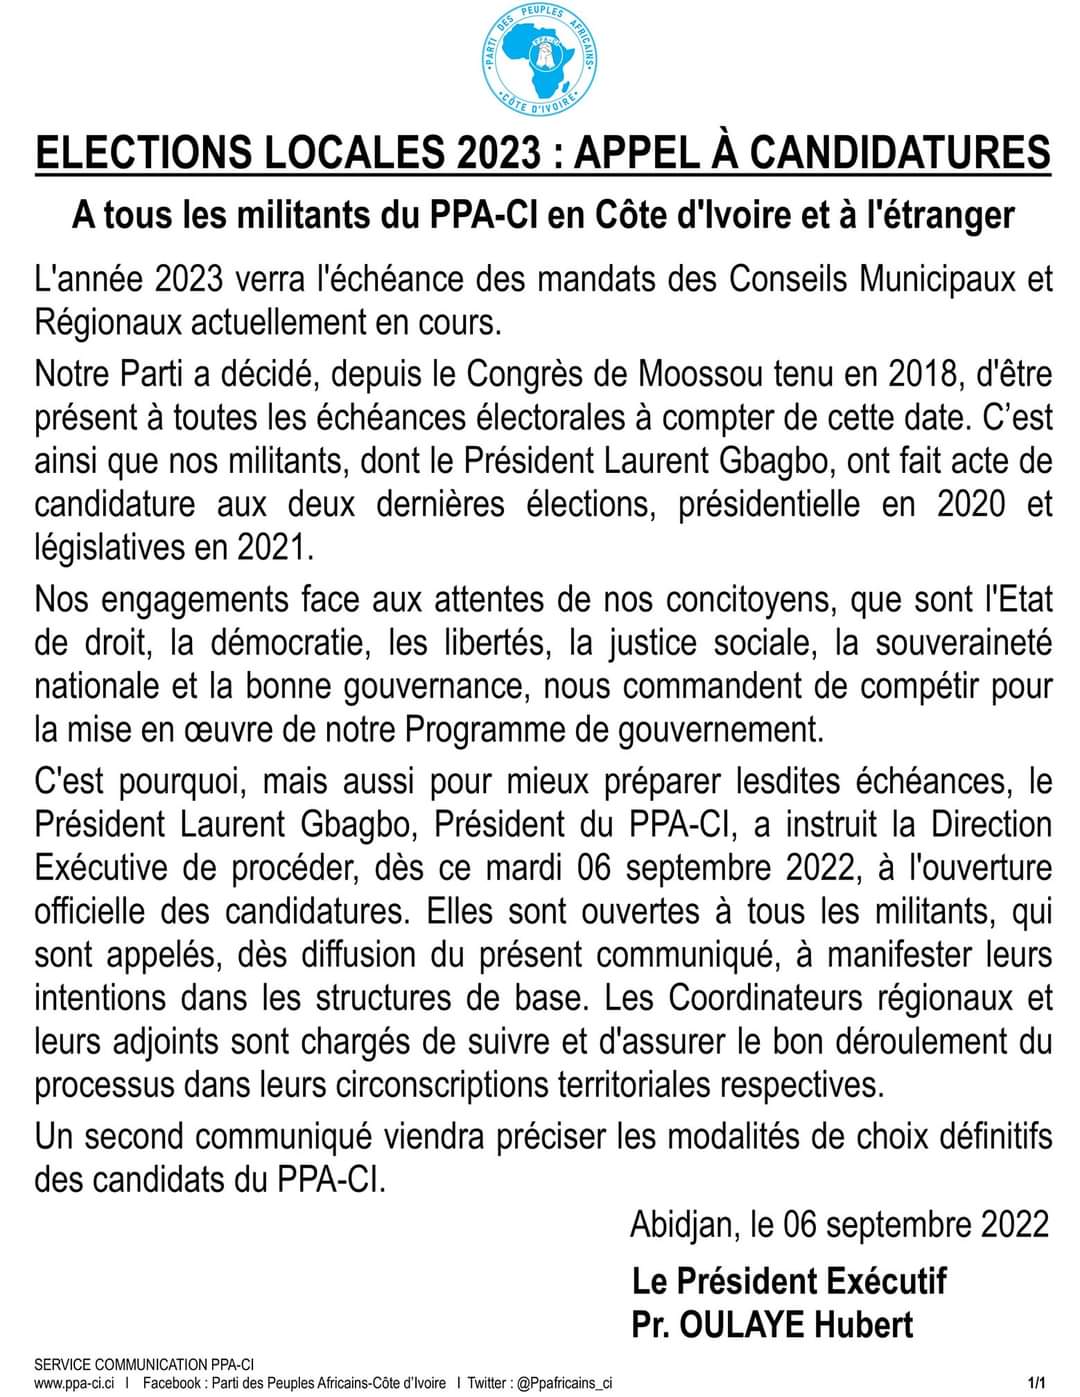 Dans un communiqué, ce mardi 6 septembre 2022, le Directeur Exécutif du PPA-CI, Hubert Oulaye, lance un appel à candidatures.